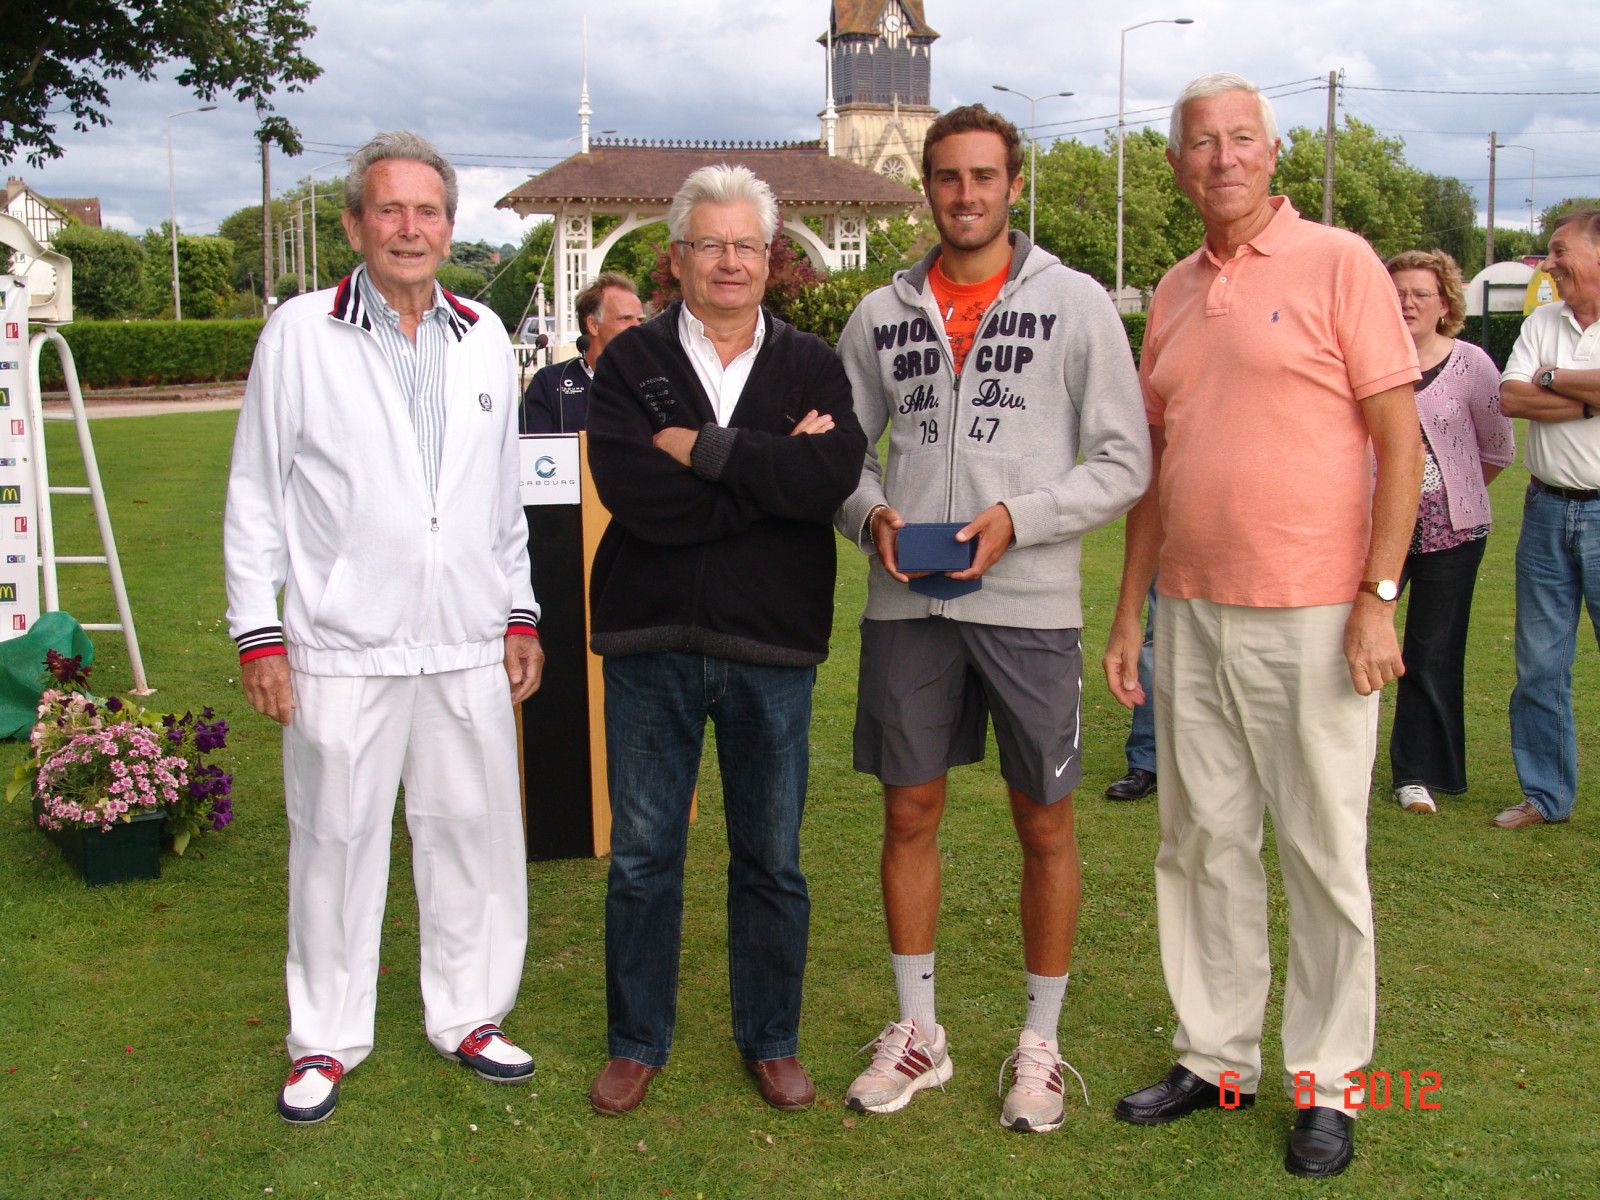 Garden Tennis Cabourg
Album tournoi seniors 2012